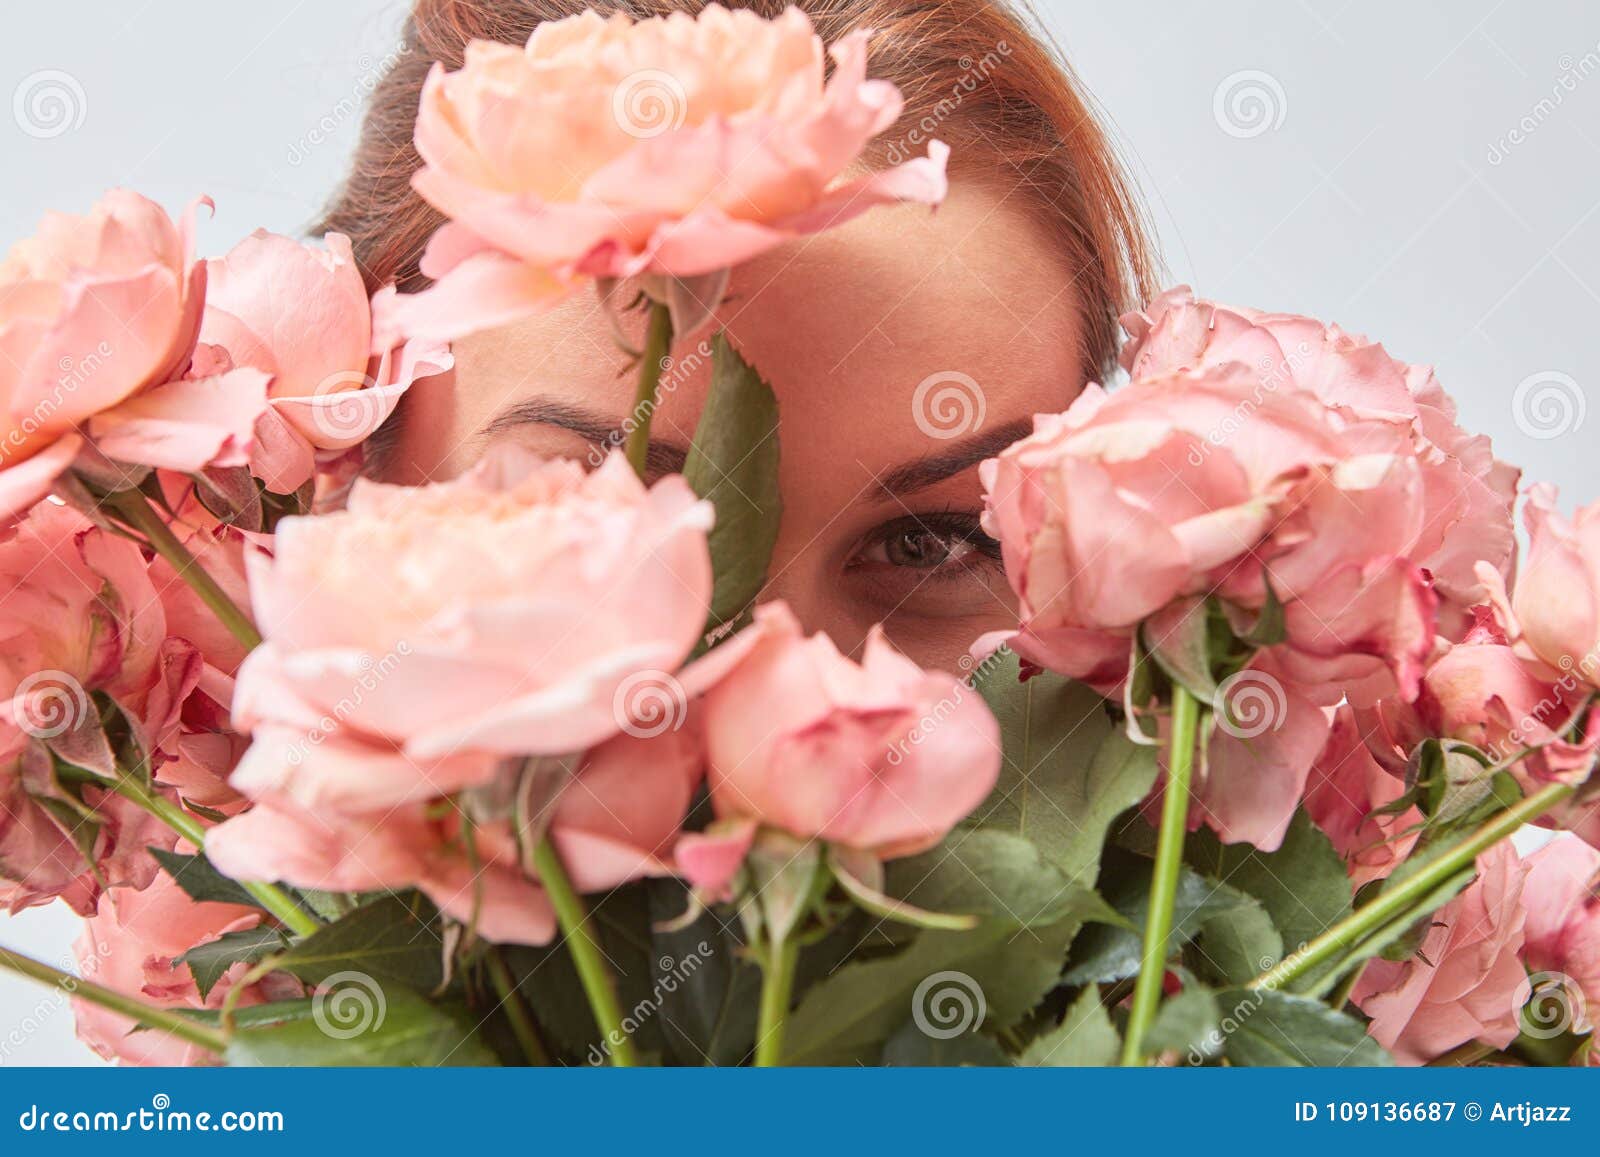 Цветы Фото Букеты Розы Для Девушек